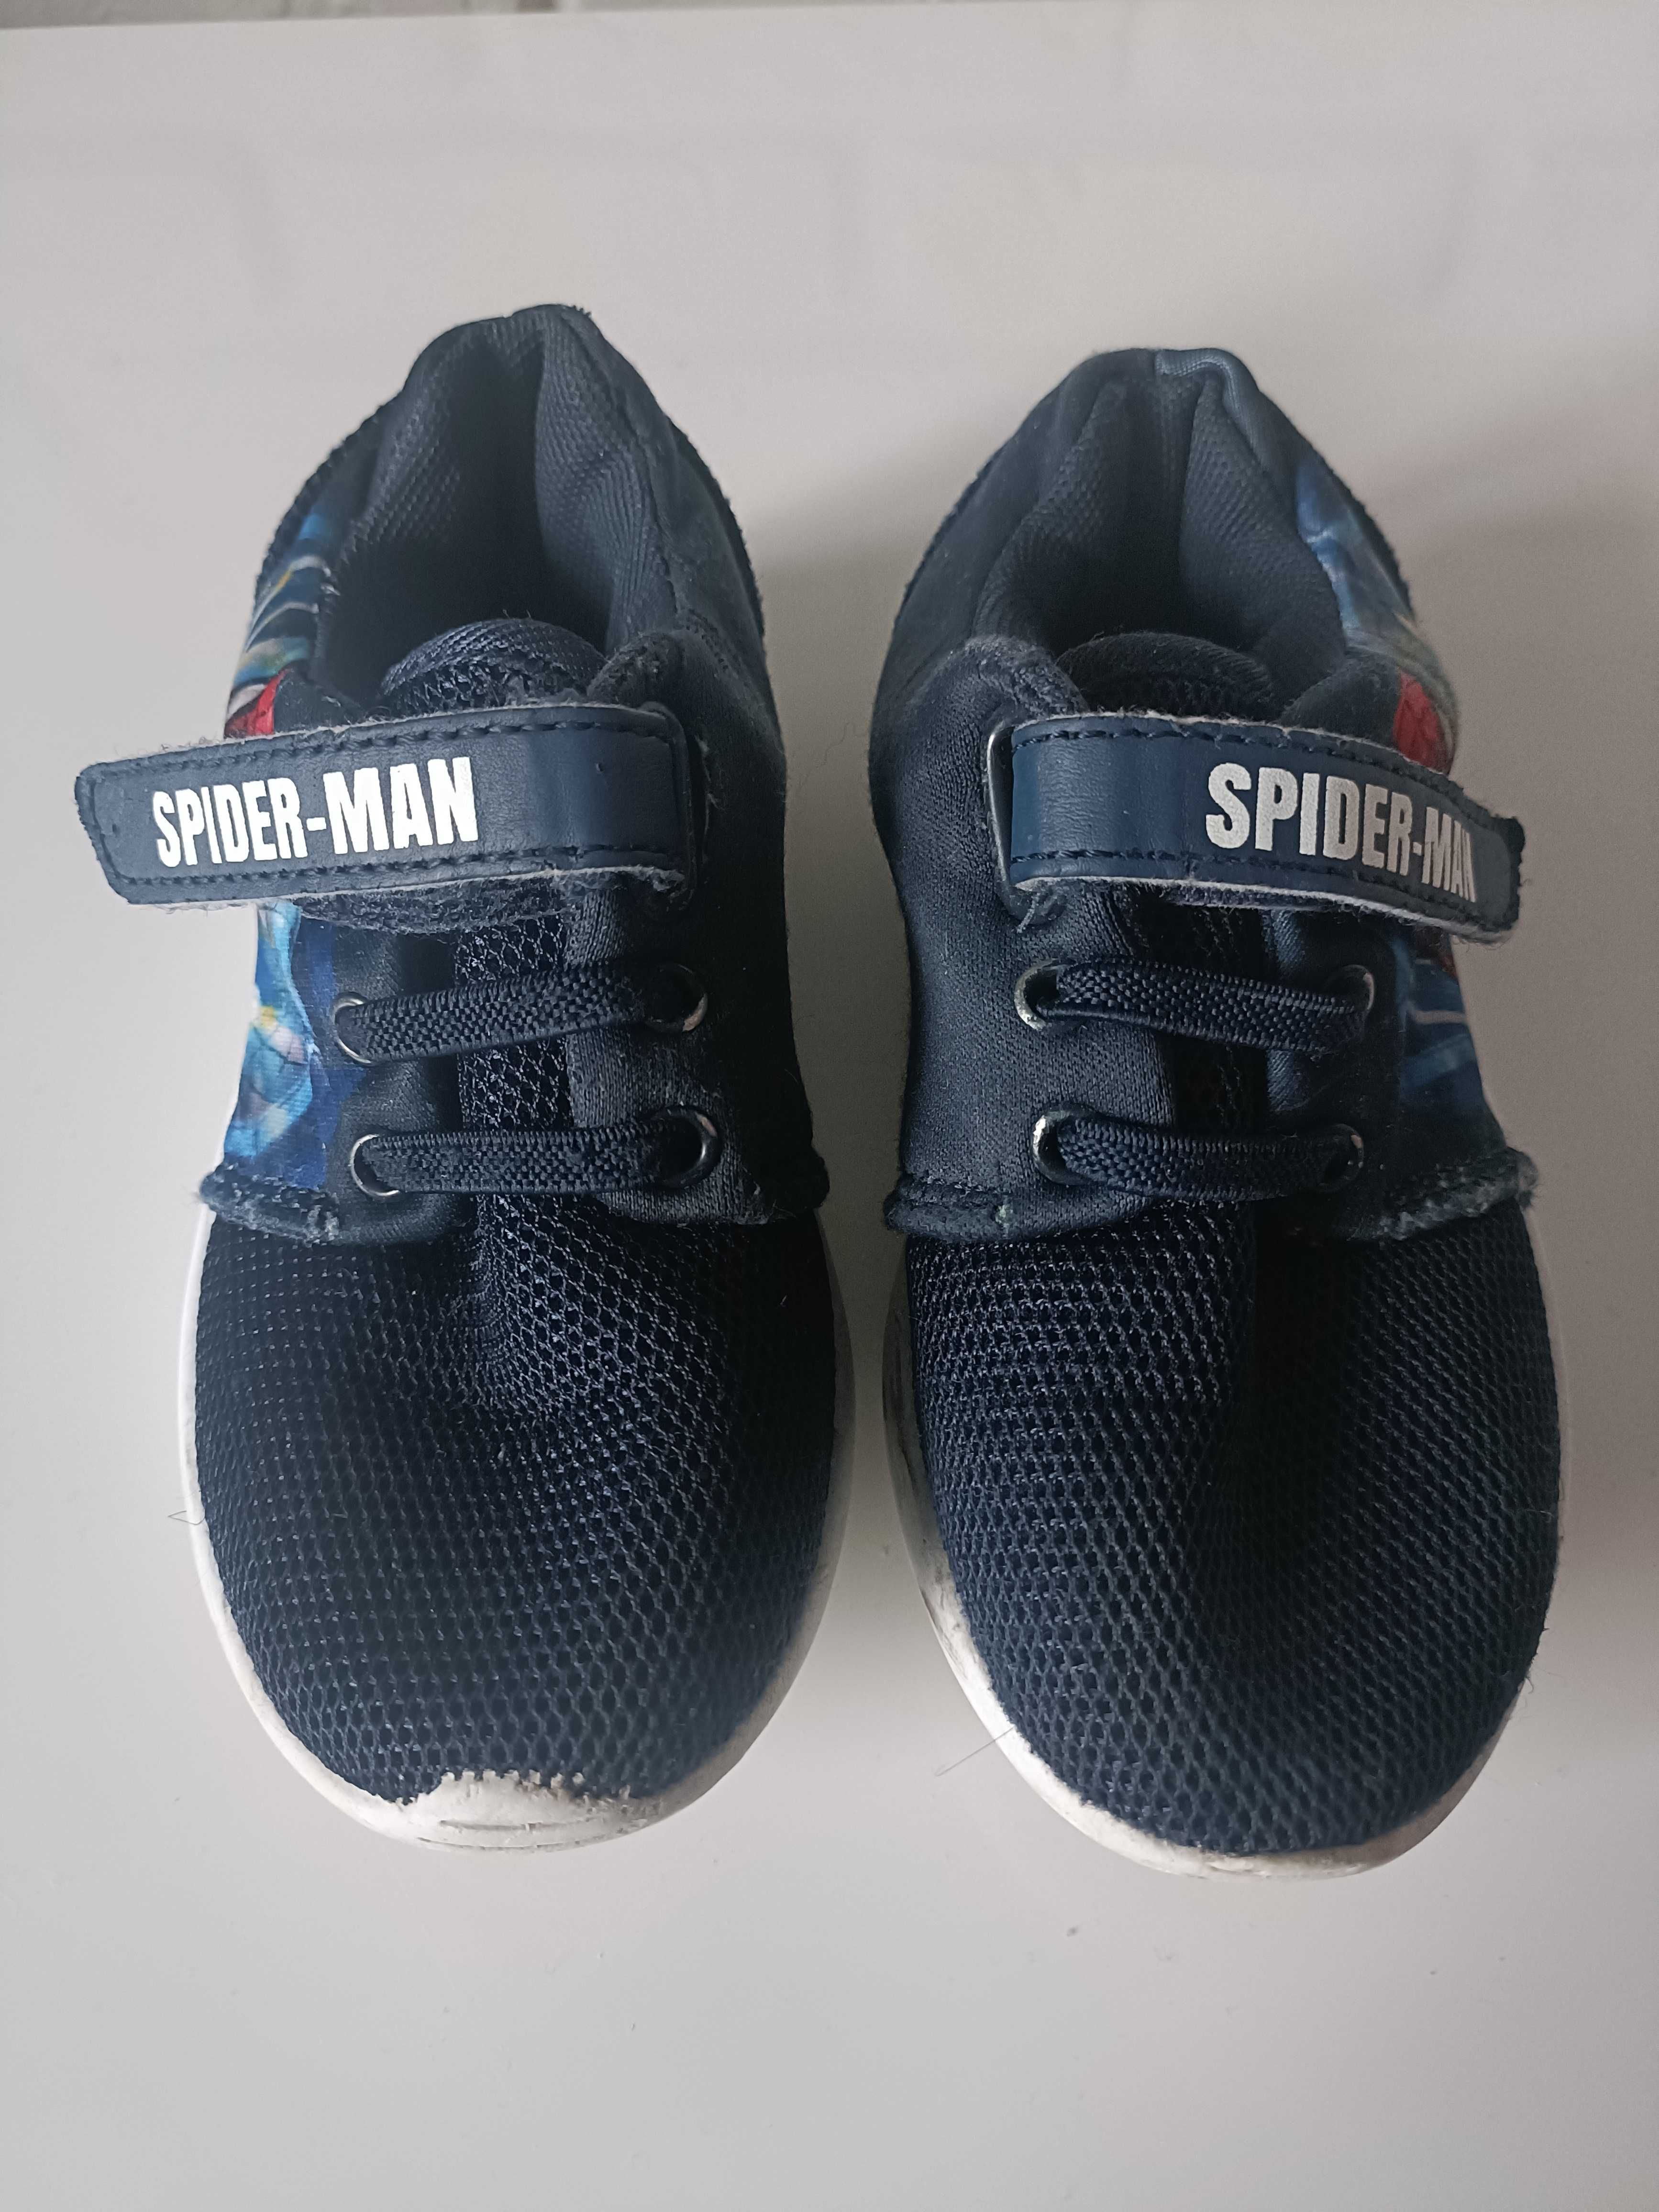 Buty sportowe dla chłopca Spiderman rozm.27 dł. wkł. 16